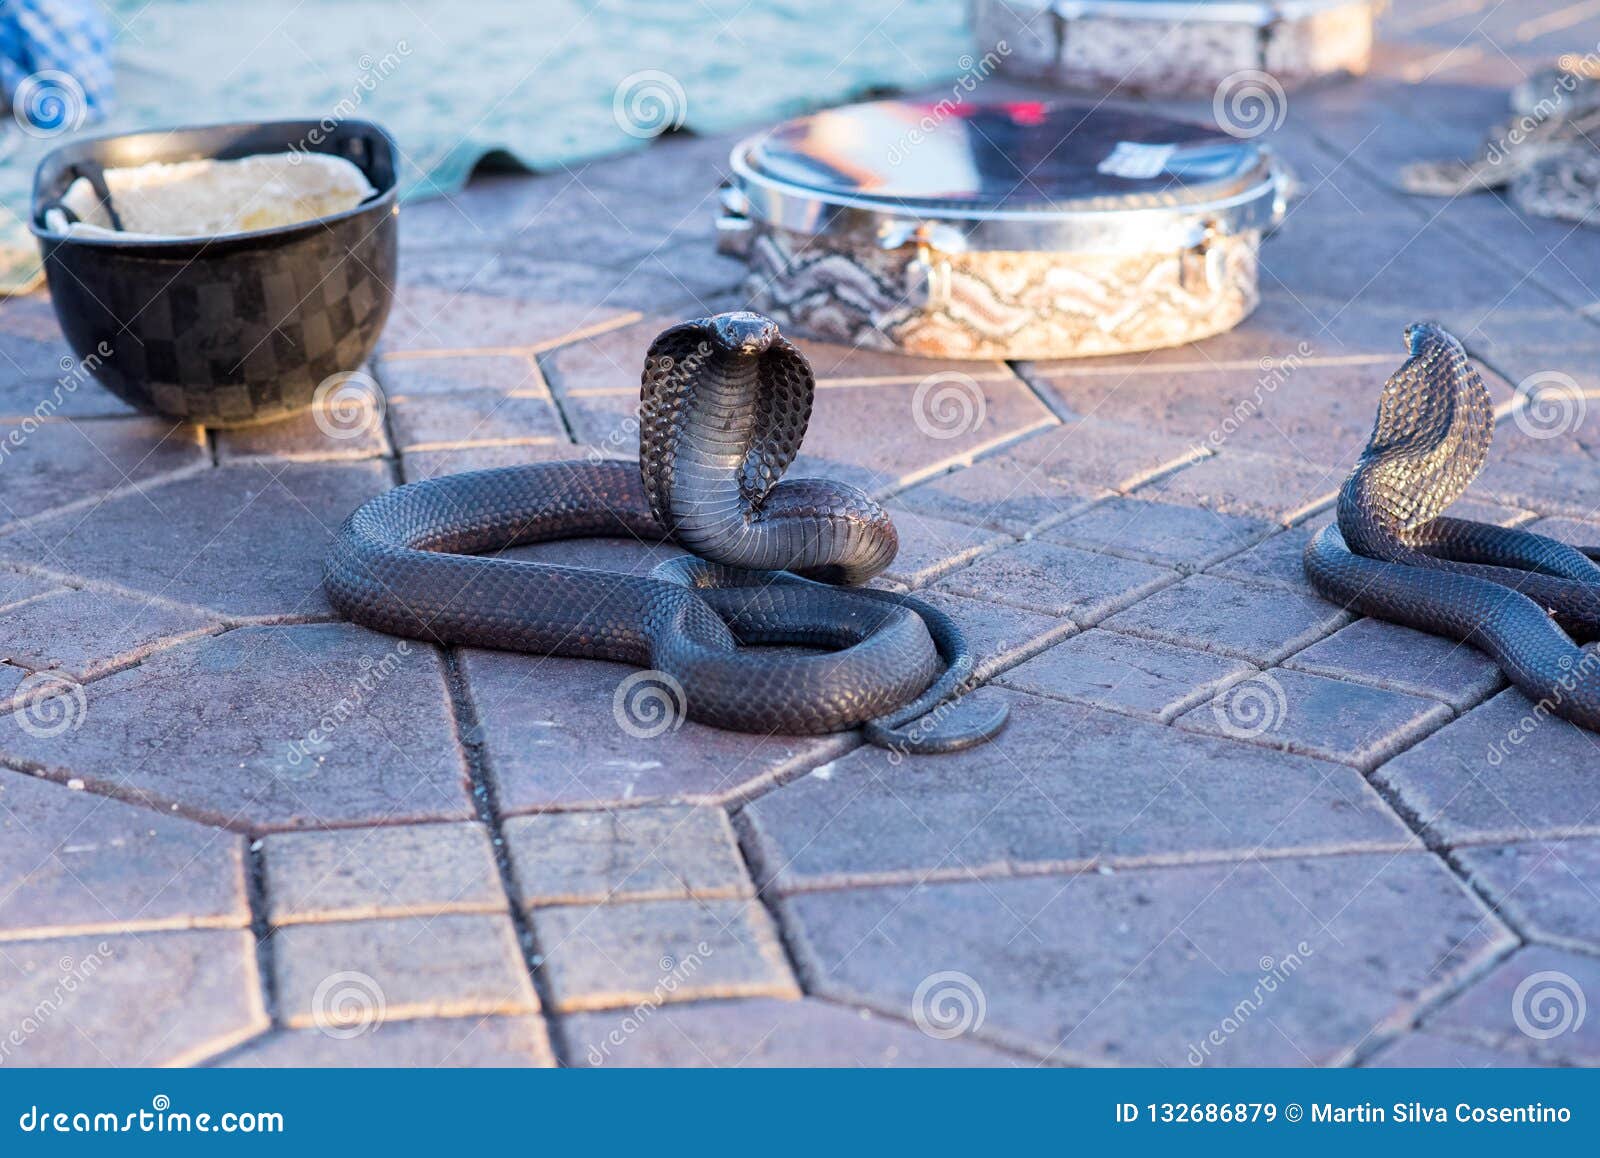 snake cobra show